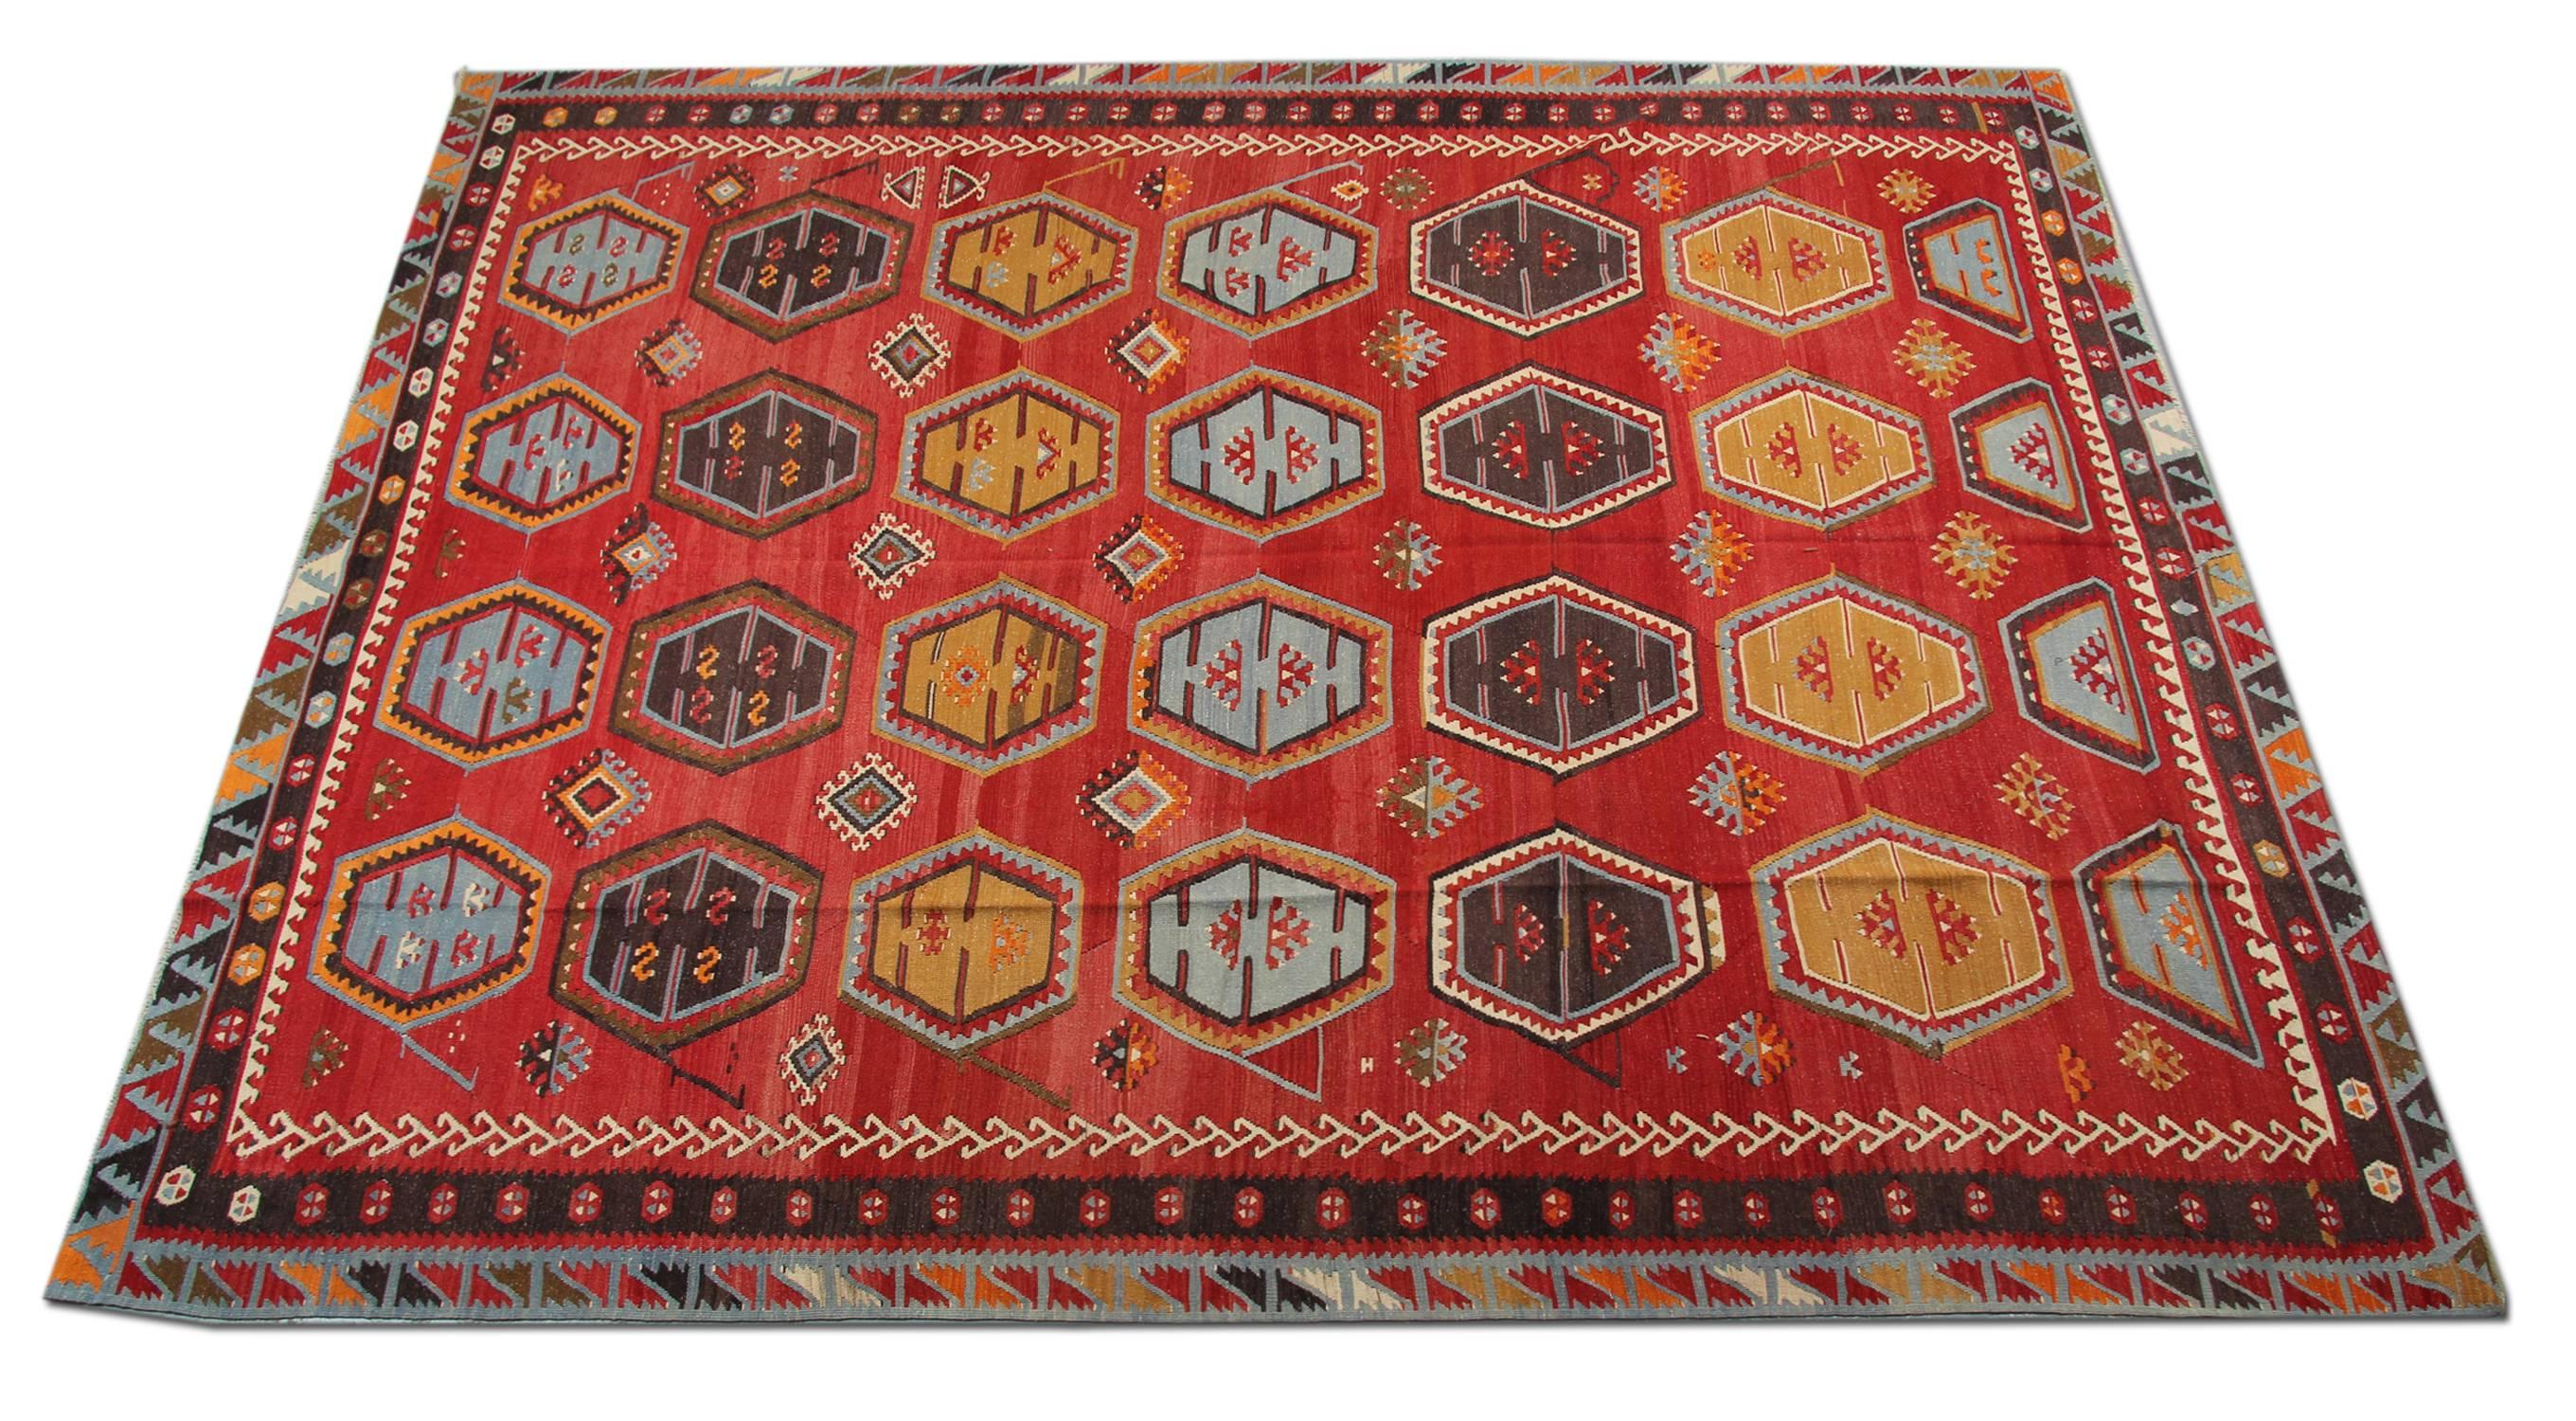 Die handgefertigten S¸arkis¸la-Kilim-Teppiche sind einer der dekorativsten Teppiche; türkische Kilims können ein zusätzliches Designelement für die Einrichtung eines Hauses sein.
Die meisten Kelims können immer mit der Inneneinrichtung harmonieren